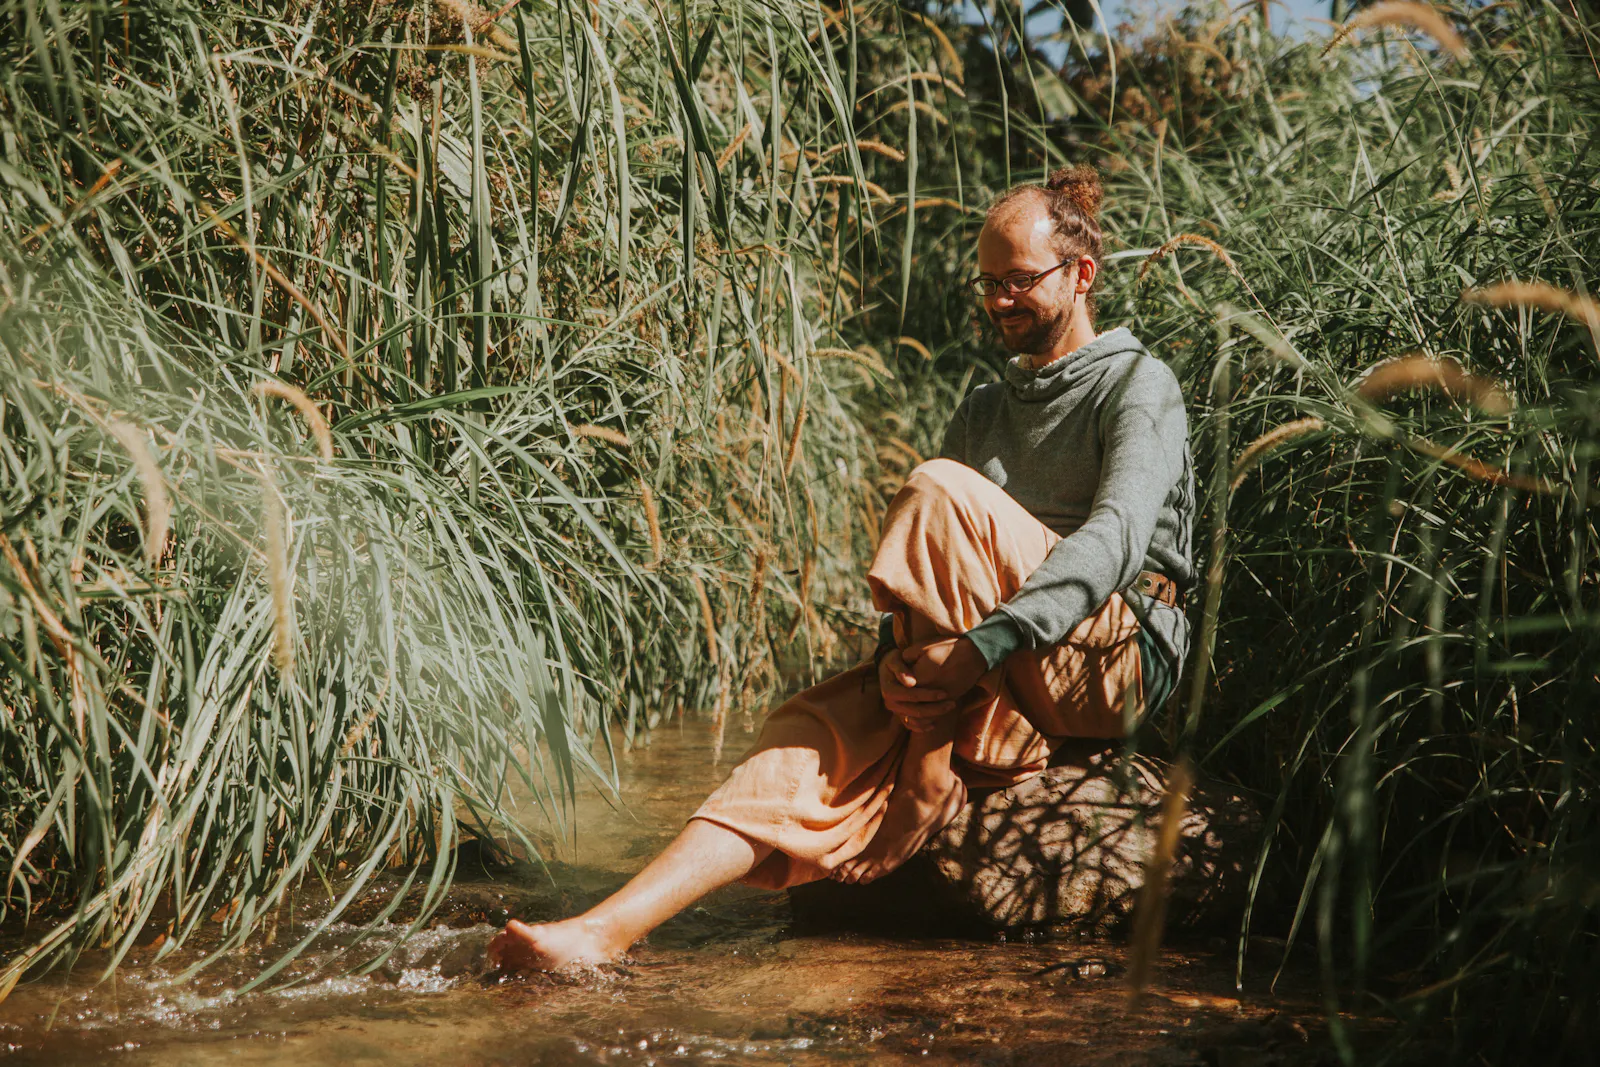 Olaf sitzt mit nackten Füßen auf einem Stein im Flussbett und hält die Füße ins Wasser. Um ihn herum grüner Farn.